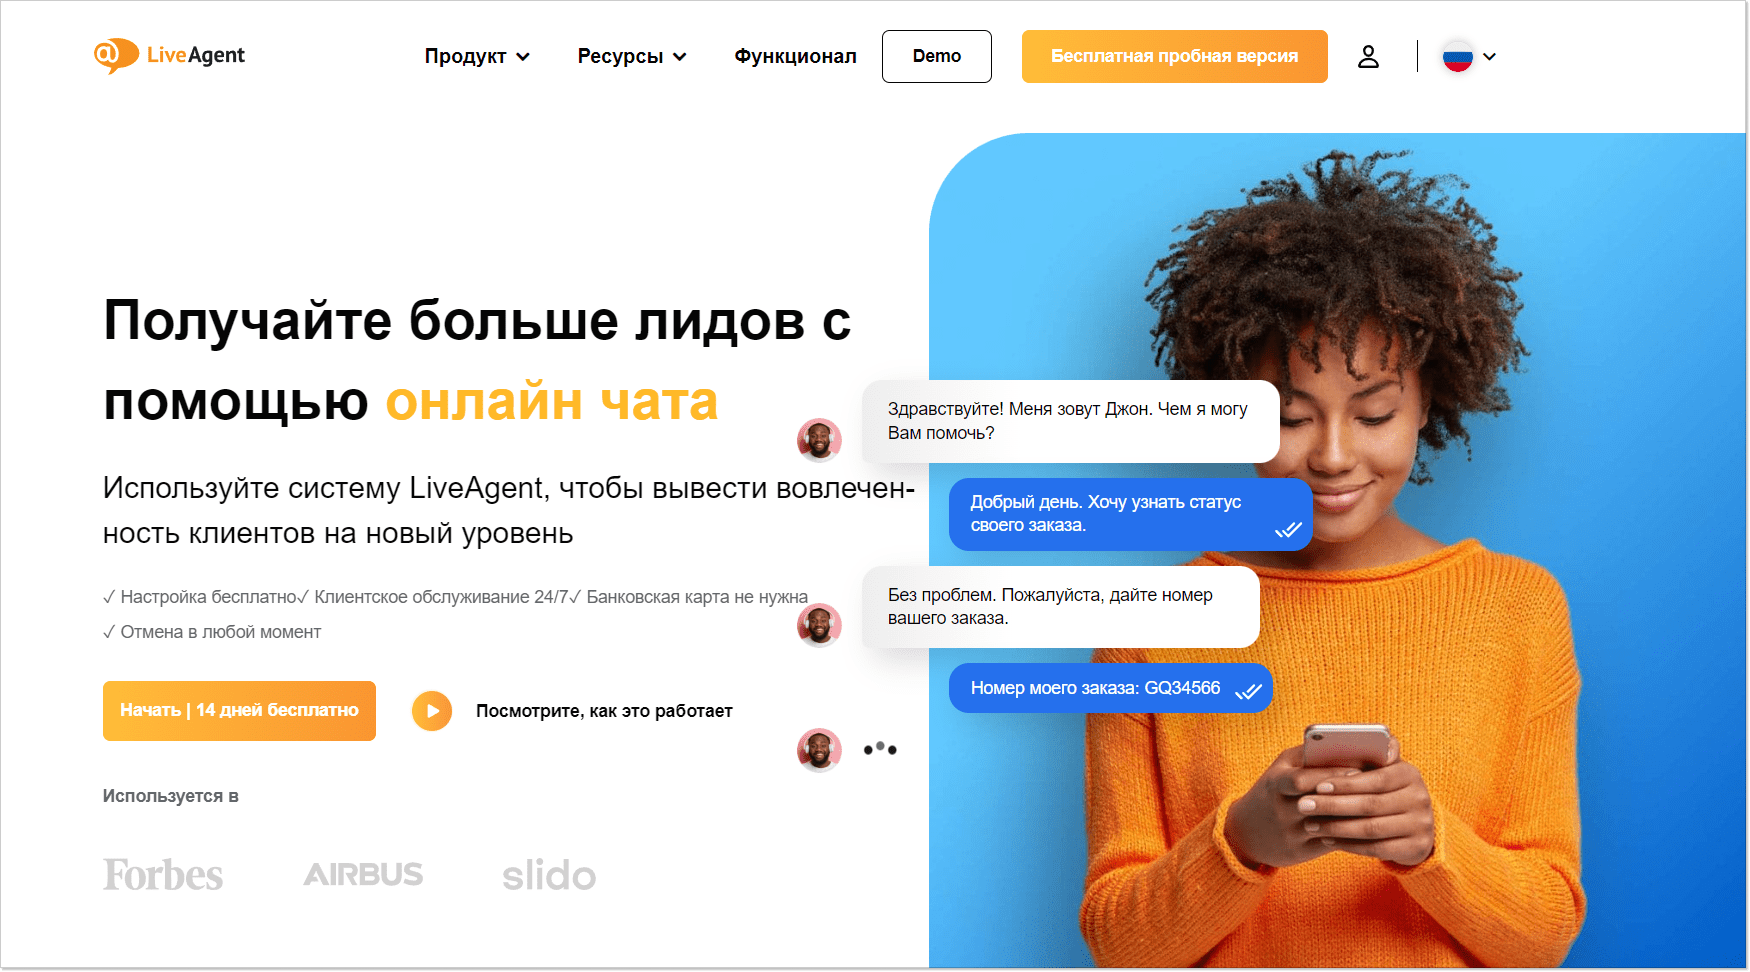 LiveAgent home page ru version